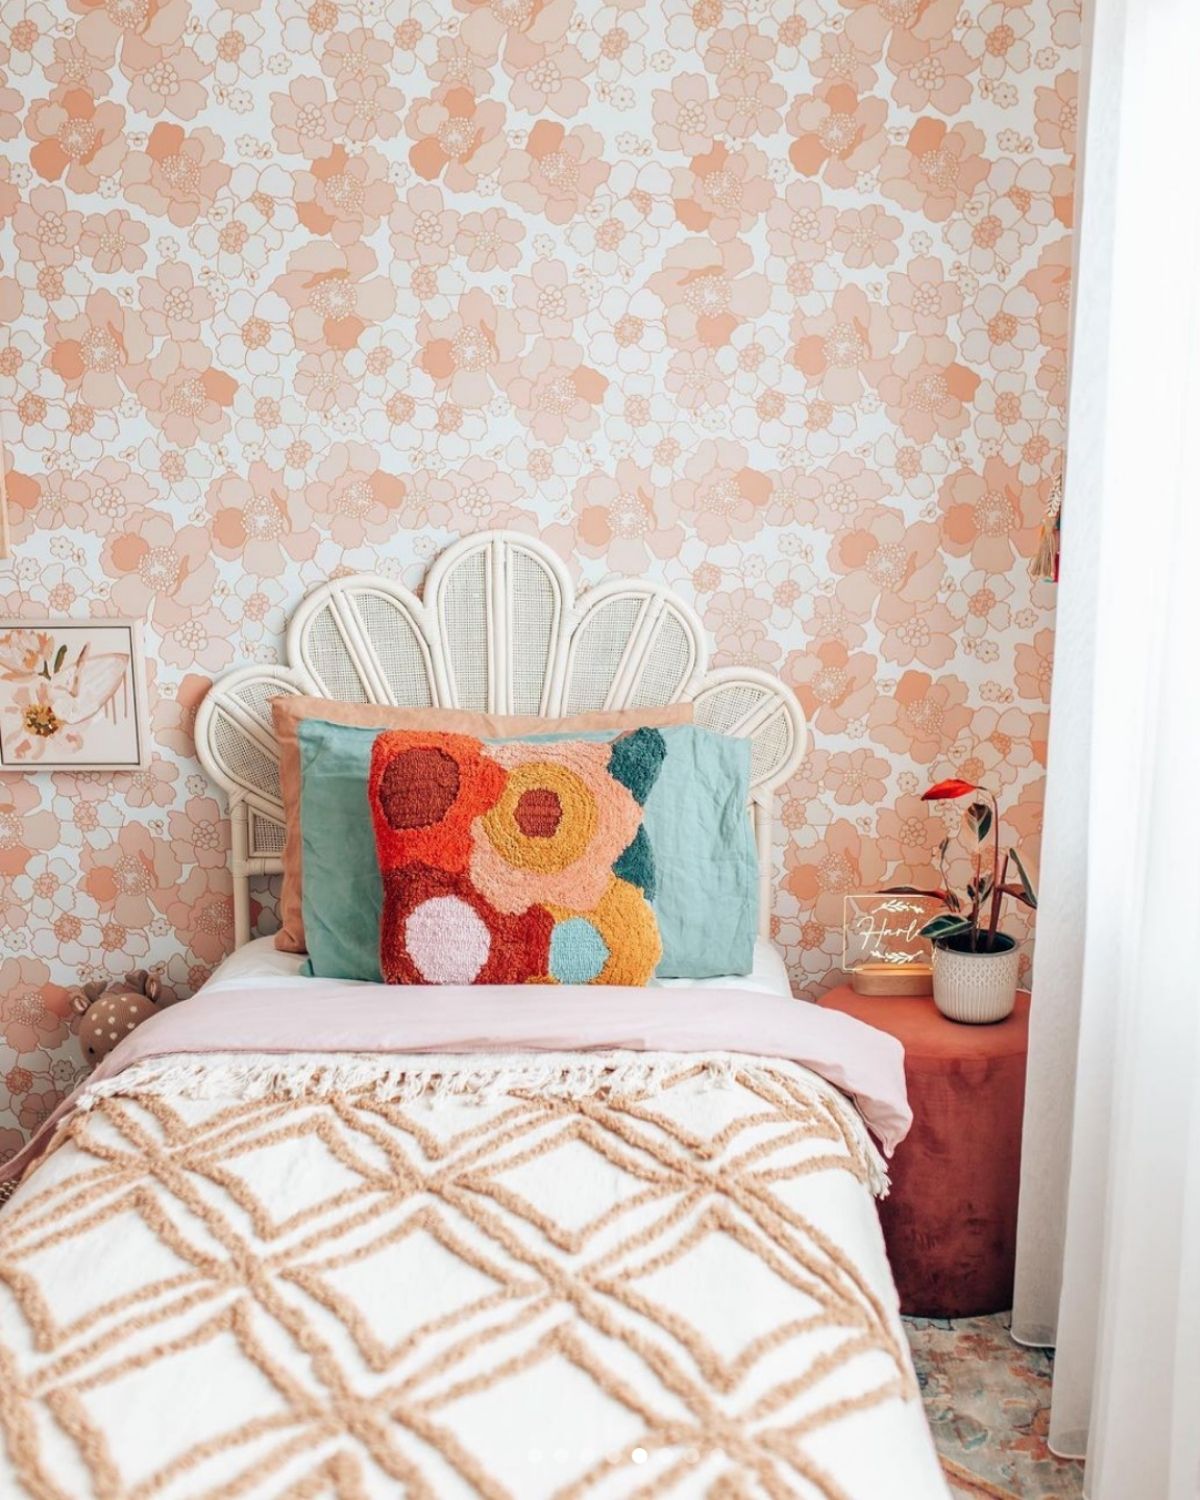 HARLOW'S ROOM by Krystal @houseofharvee - 3